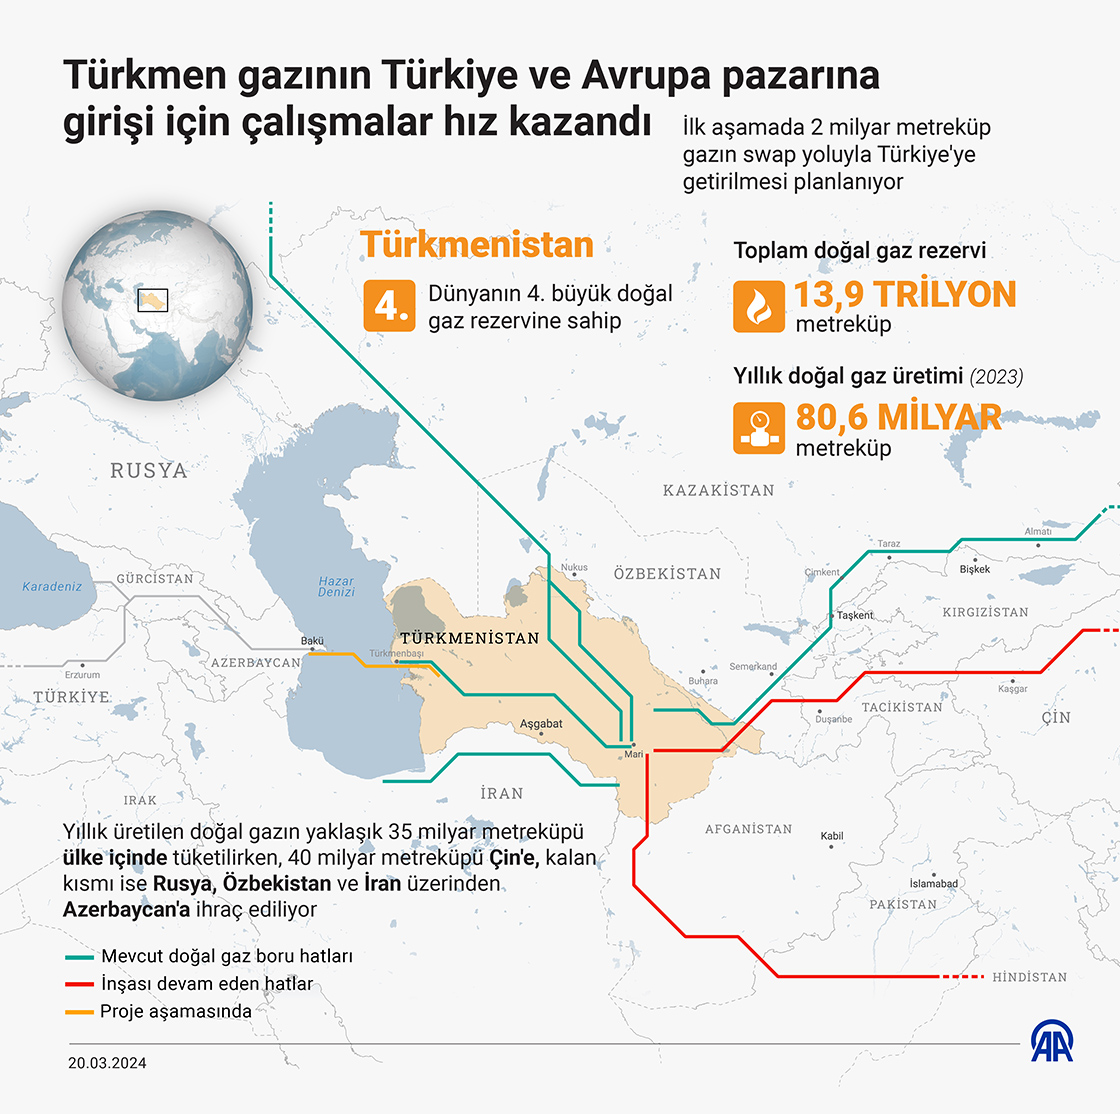 Türkmen gazının Türkiye ve Avrupa piyasasına taşınmasında sona geliniyor